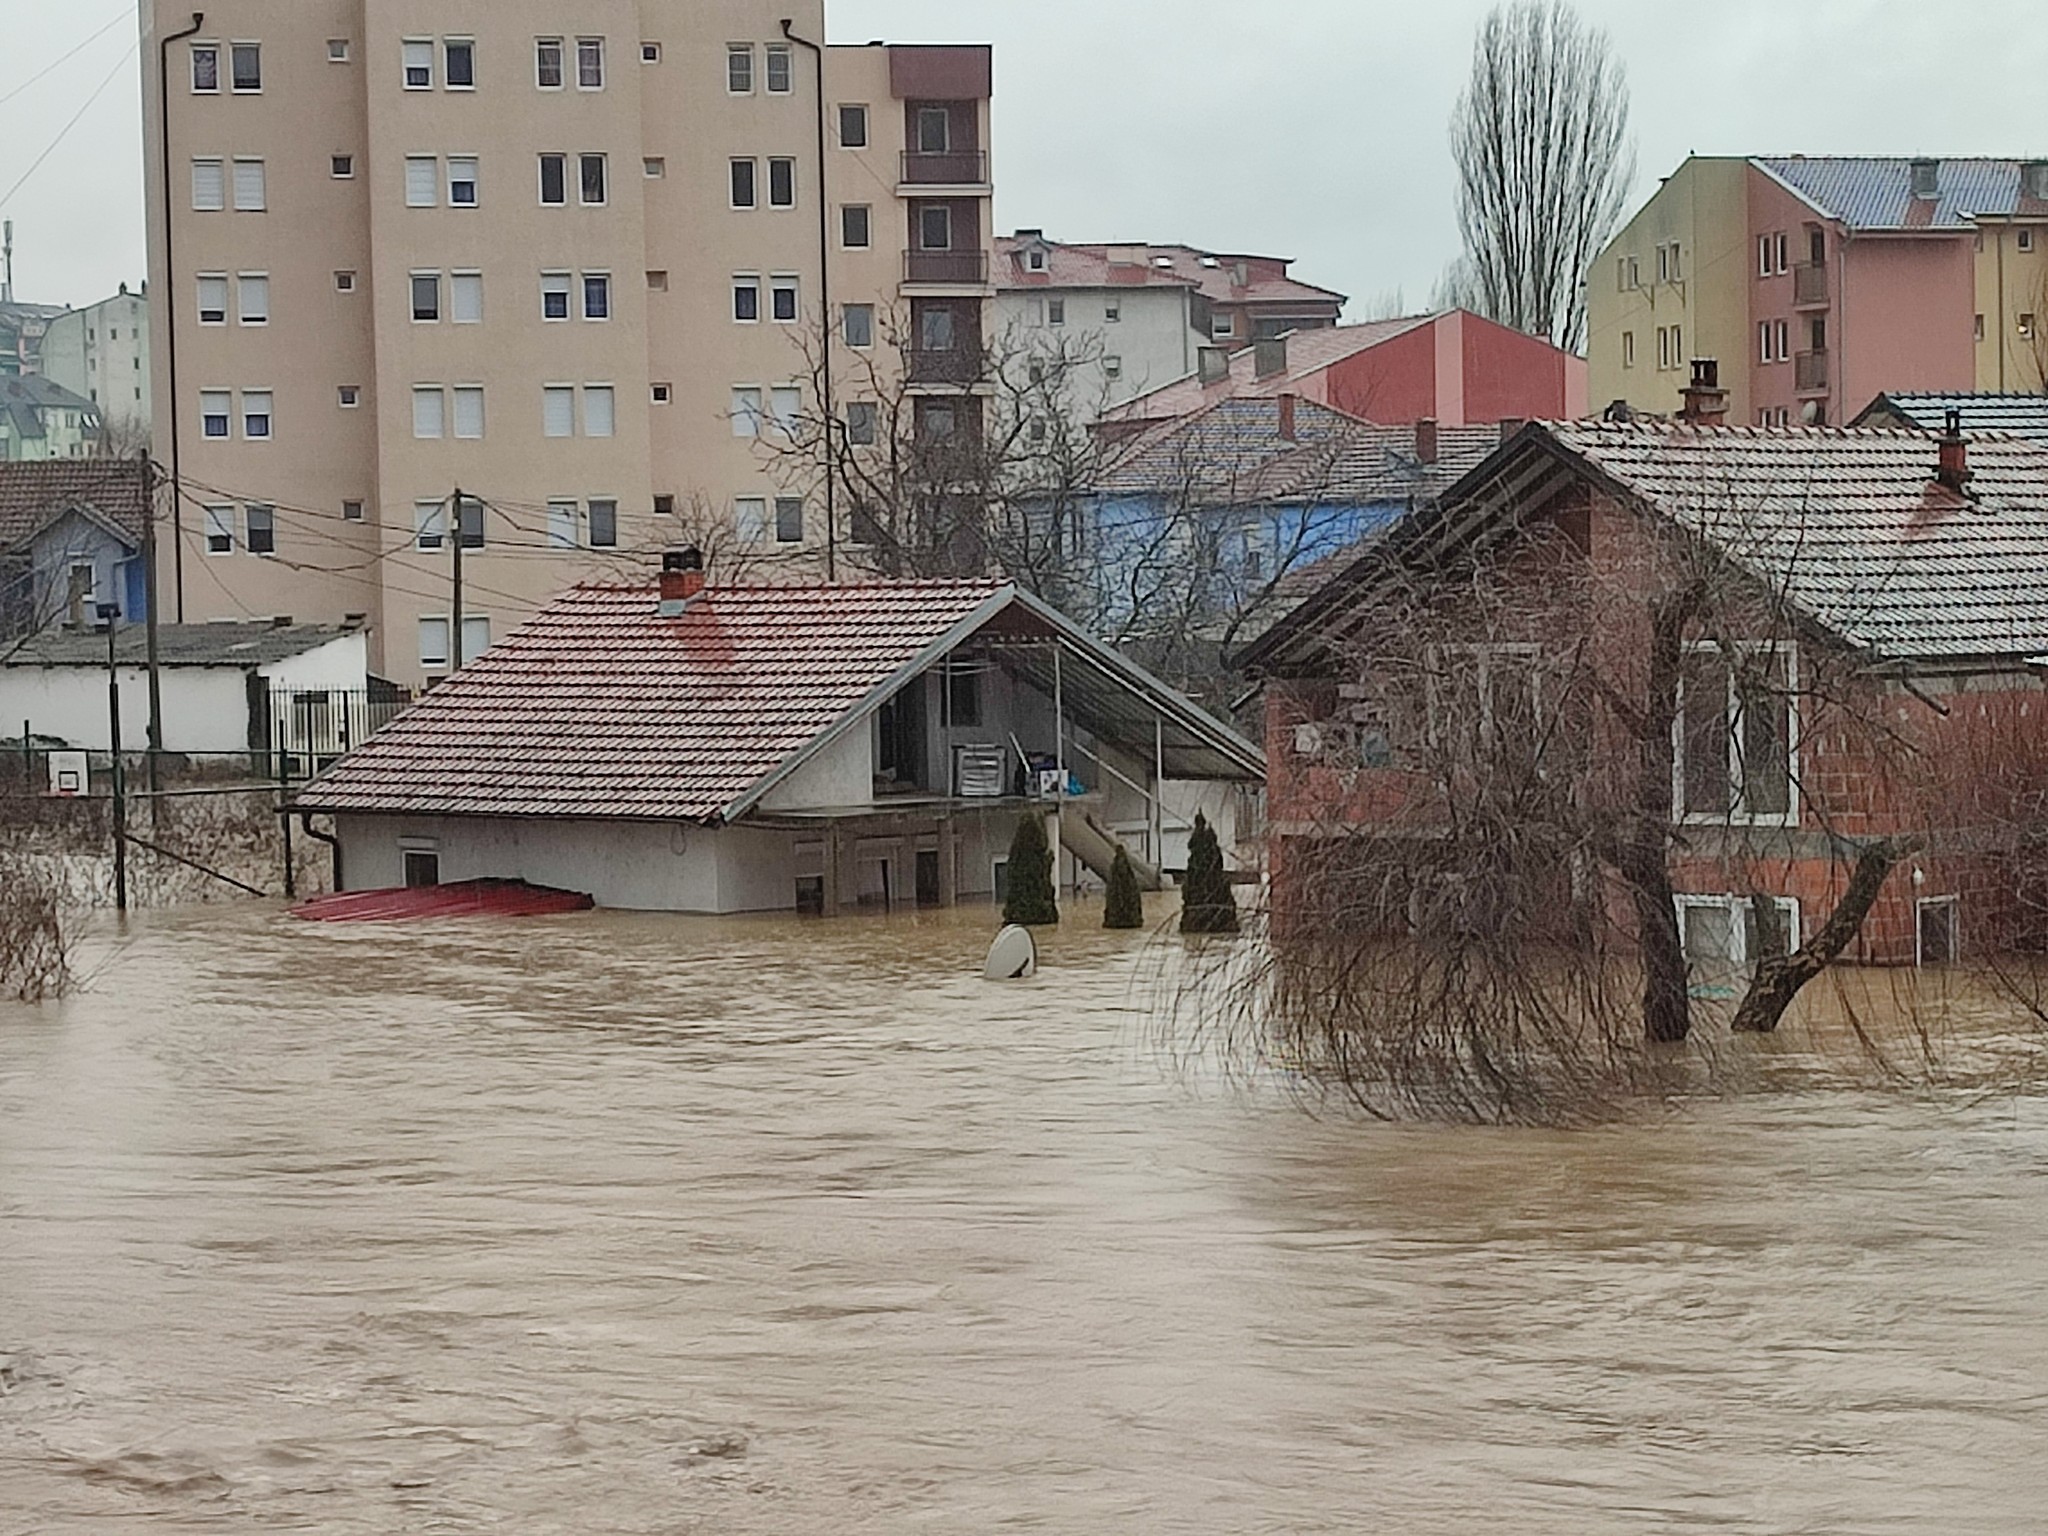 Raporti fillestar: Dhjetëra miliona euro dëme nga përmbytjet në Drenicë